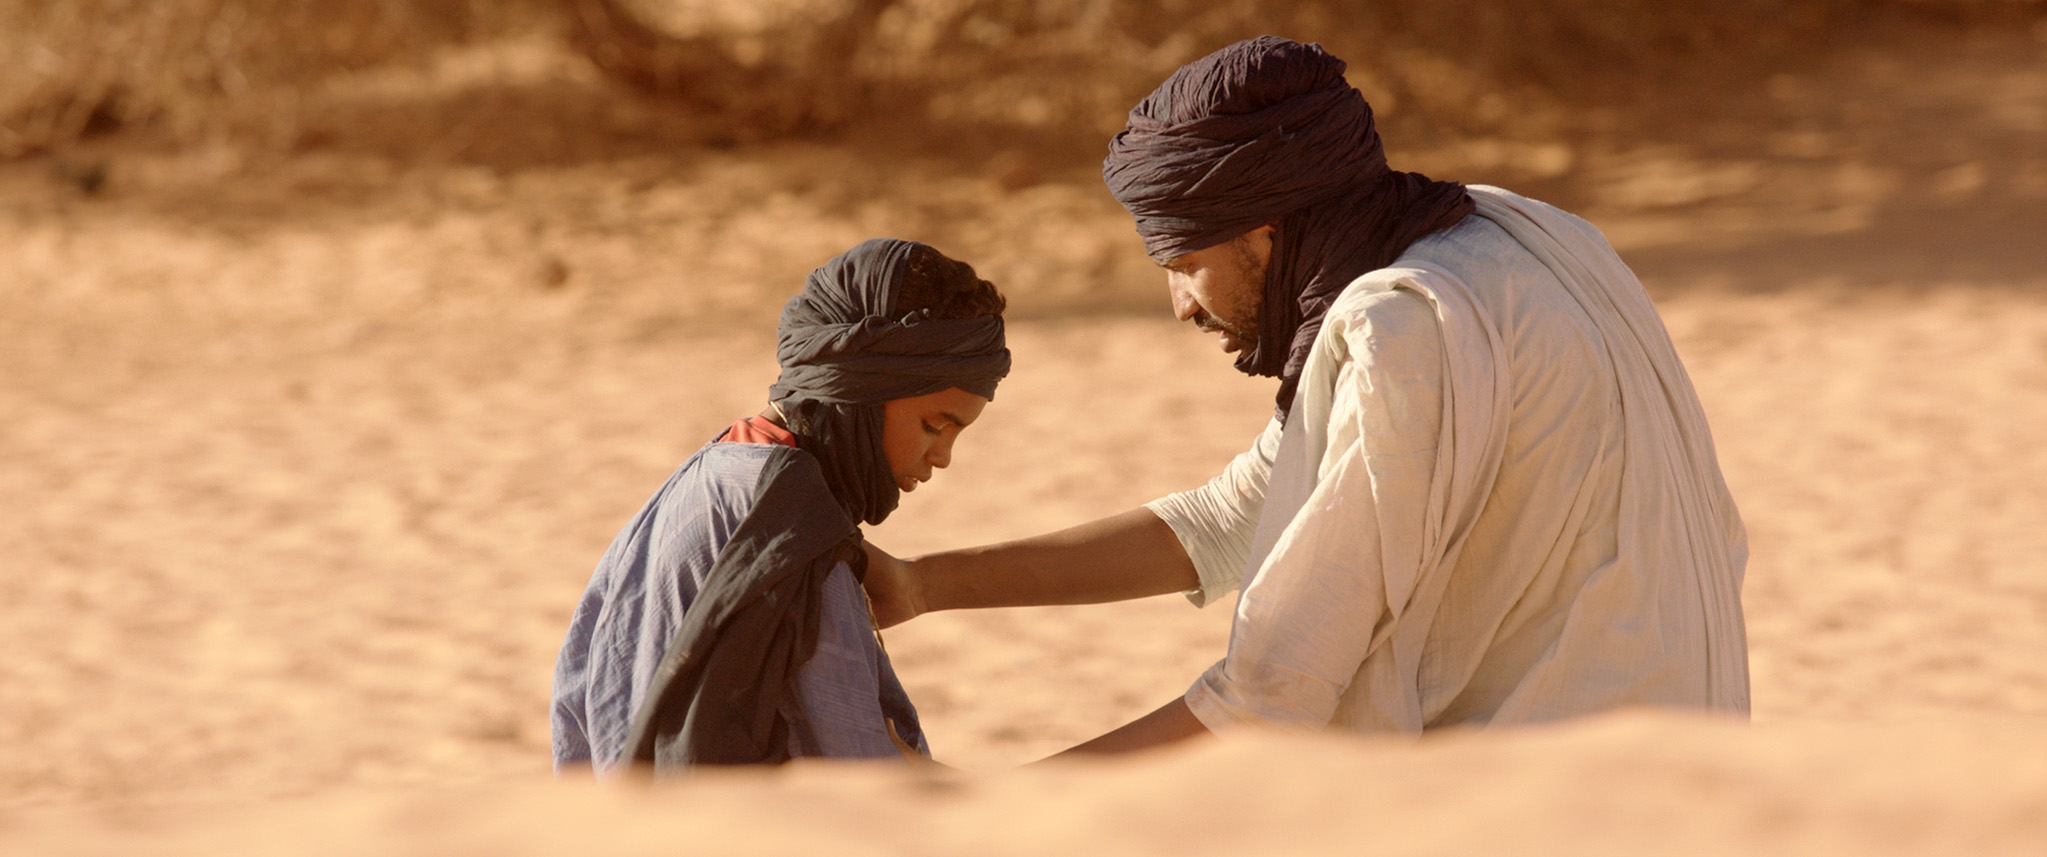 Image du film Timbuktu ab061a82-63b6-4f49-96ba-0f142f7d557f